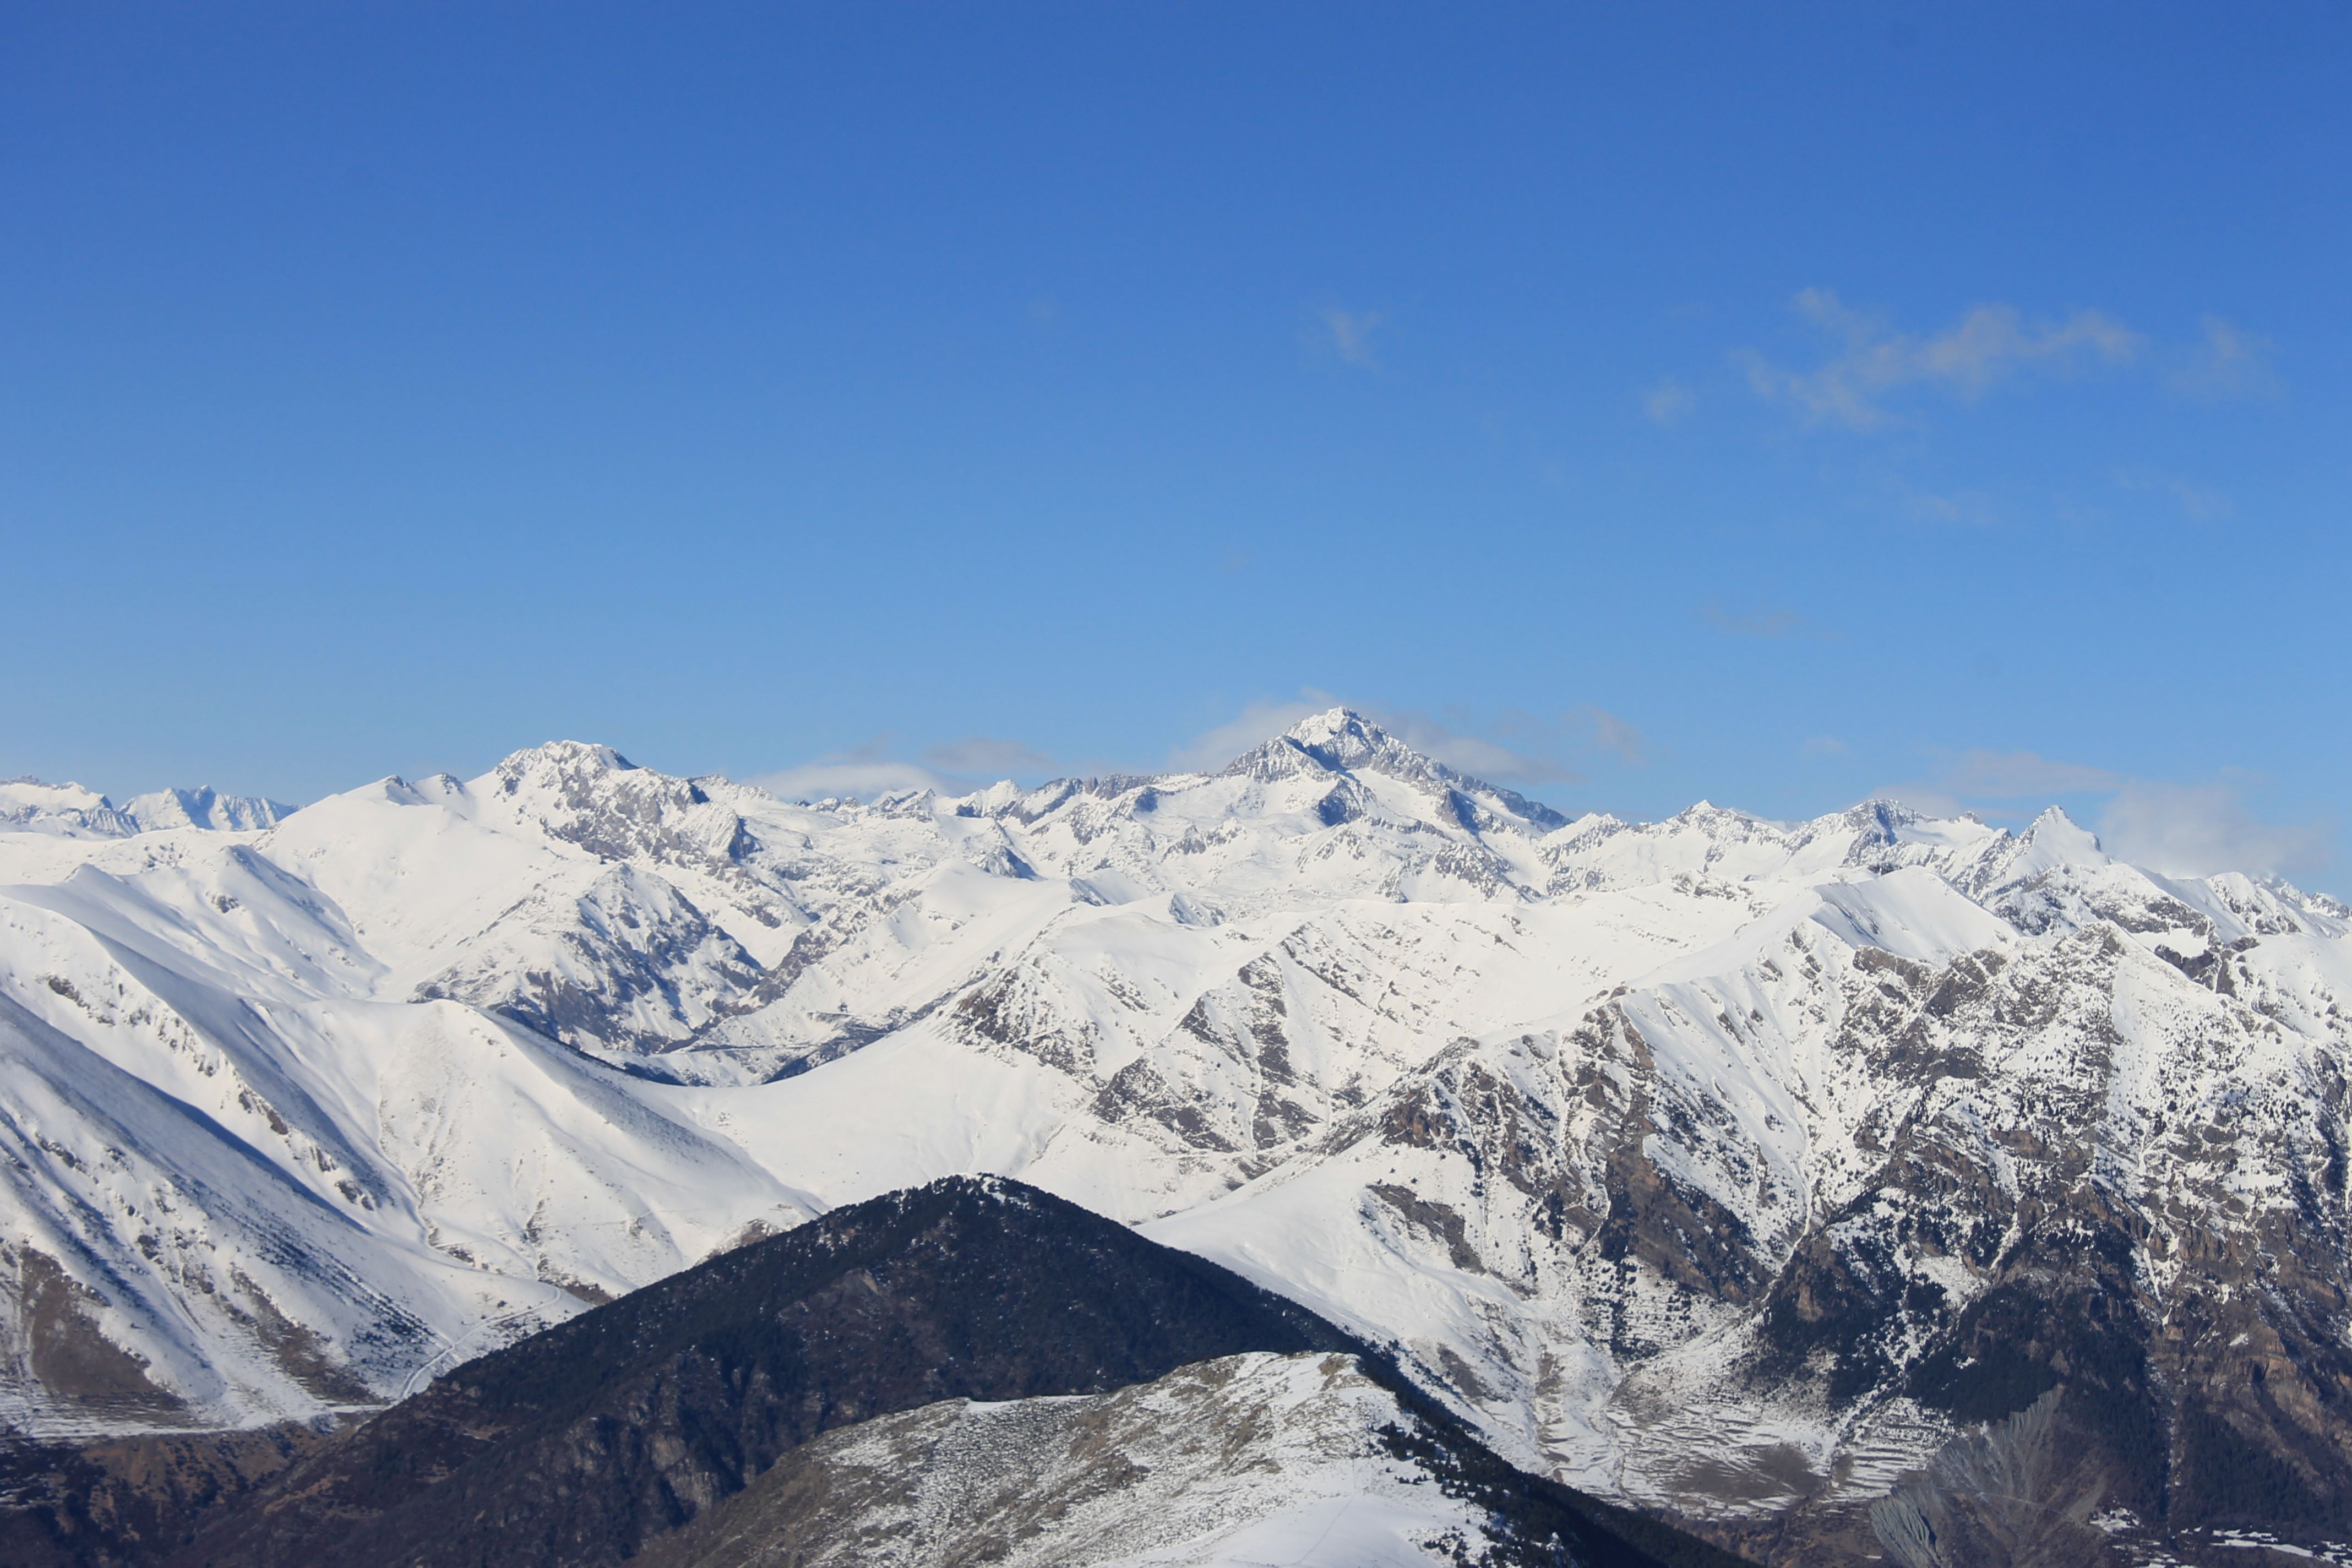 Uitzicht op de Aneto, die met 3404 meter de hoogste berg van de Pyreneeën is